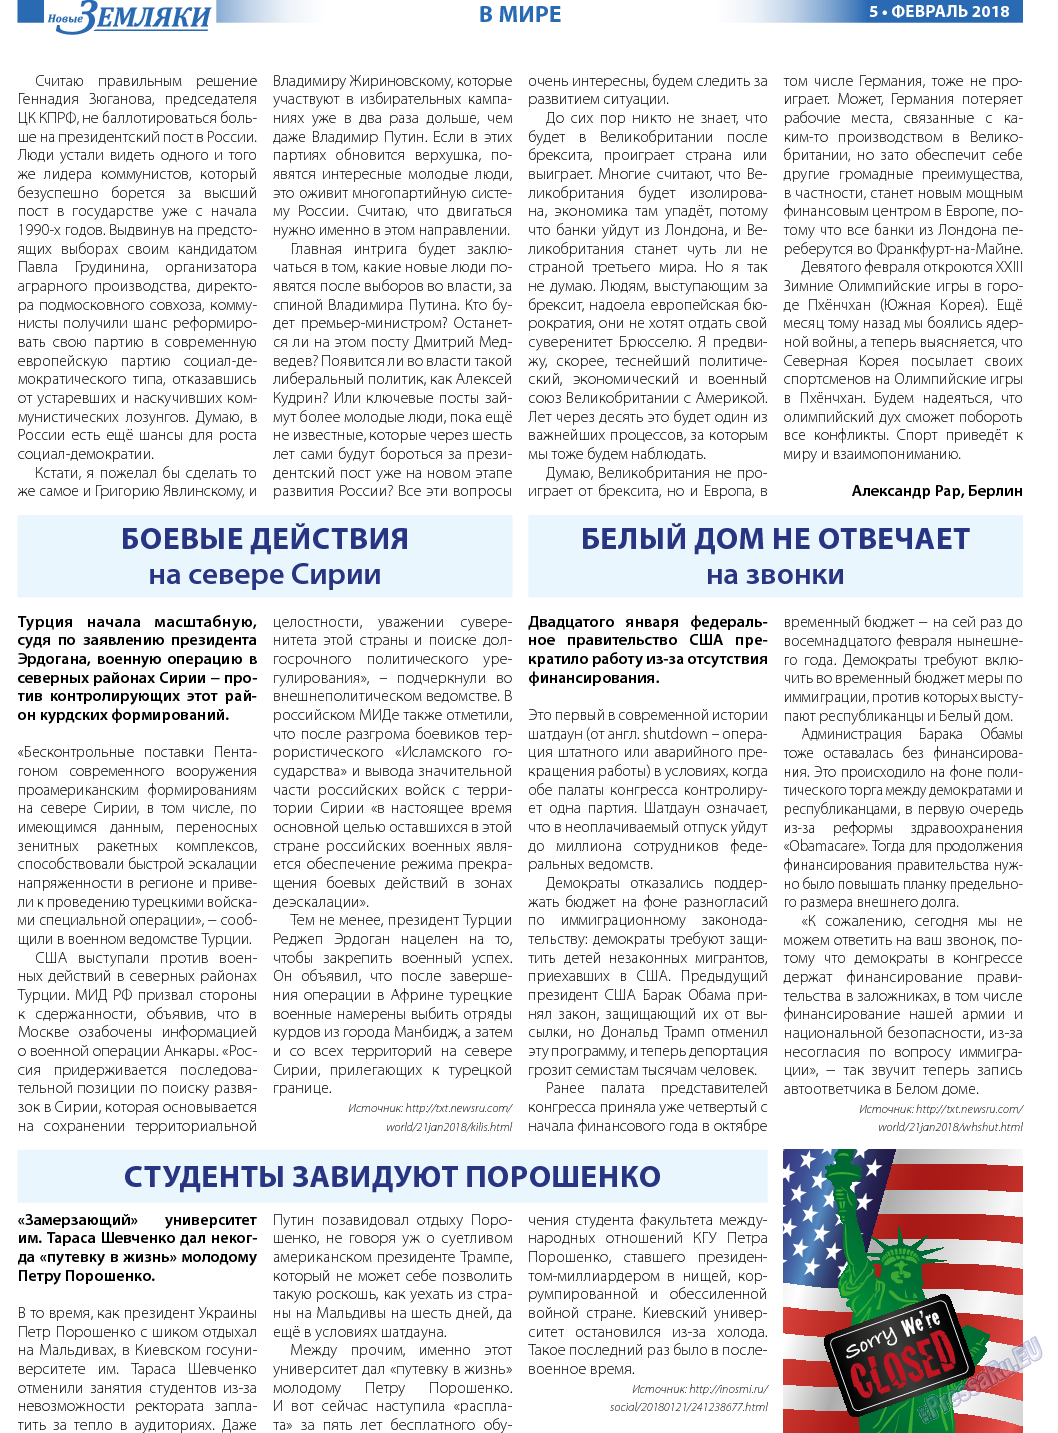 Новые Земляки, газета. 2018 №2 стр.5